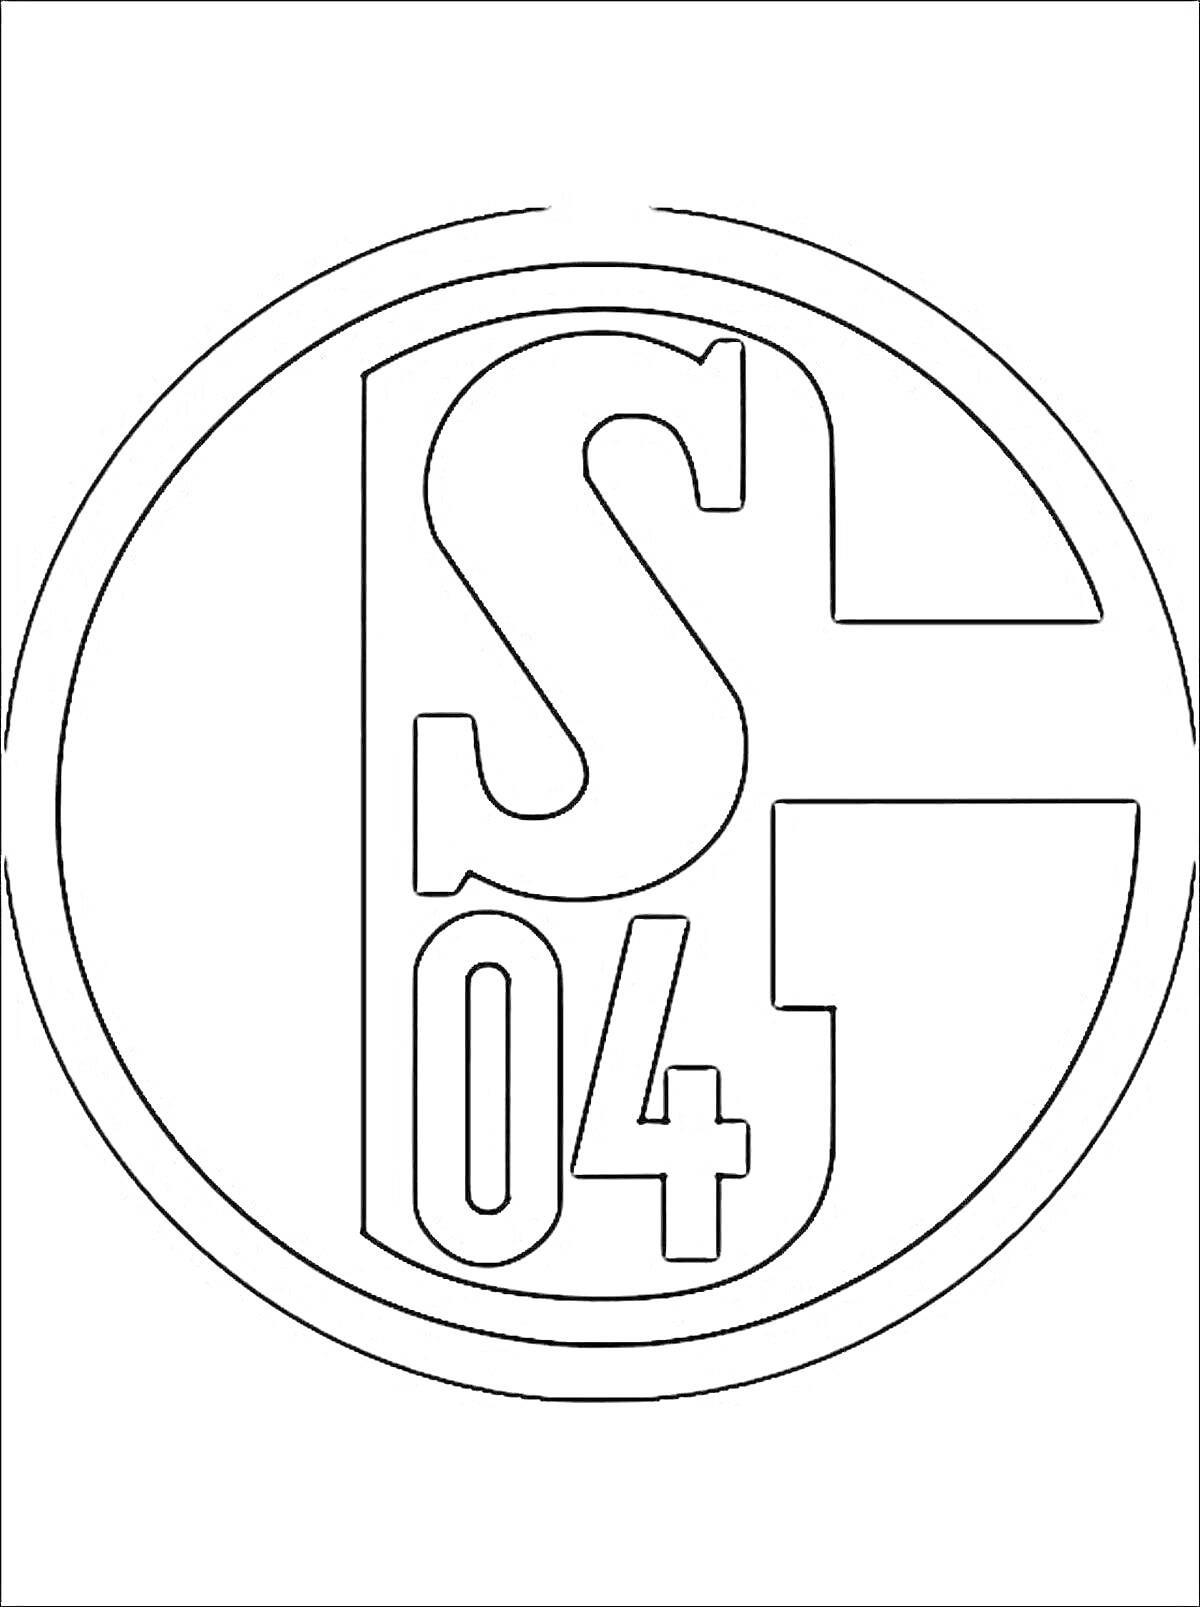 Раскраска Логотип футбольного клуба с буквами 